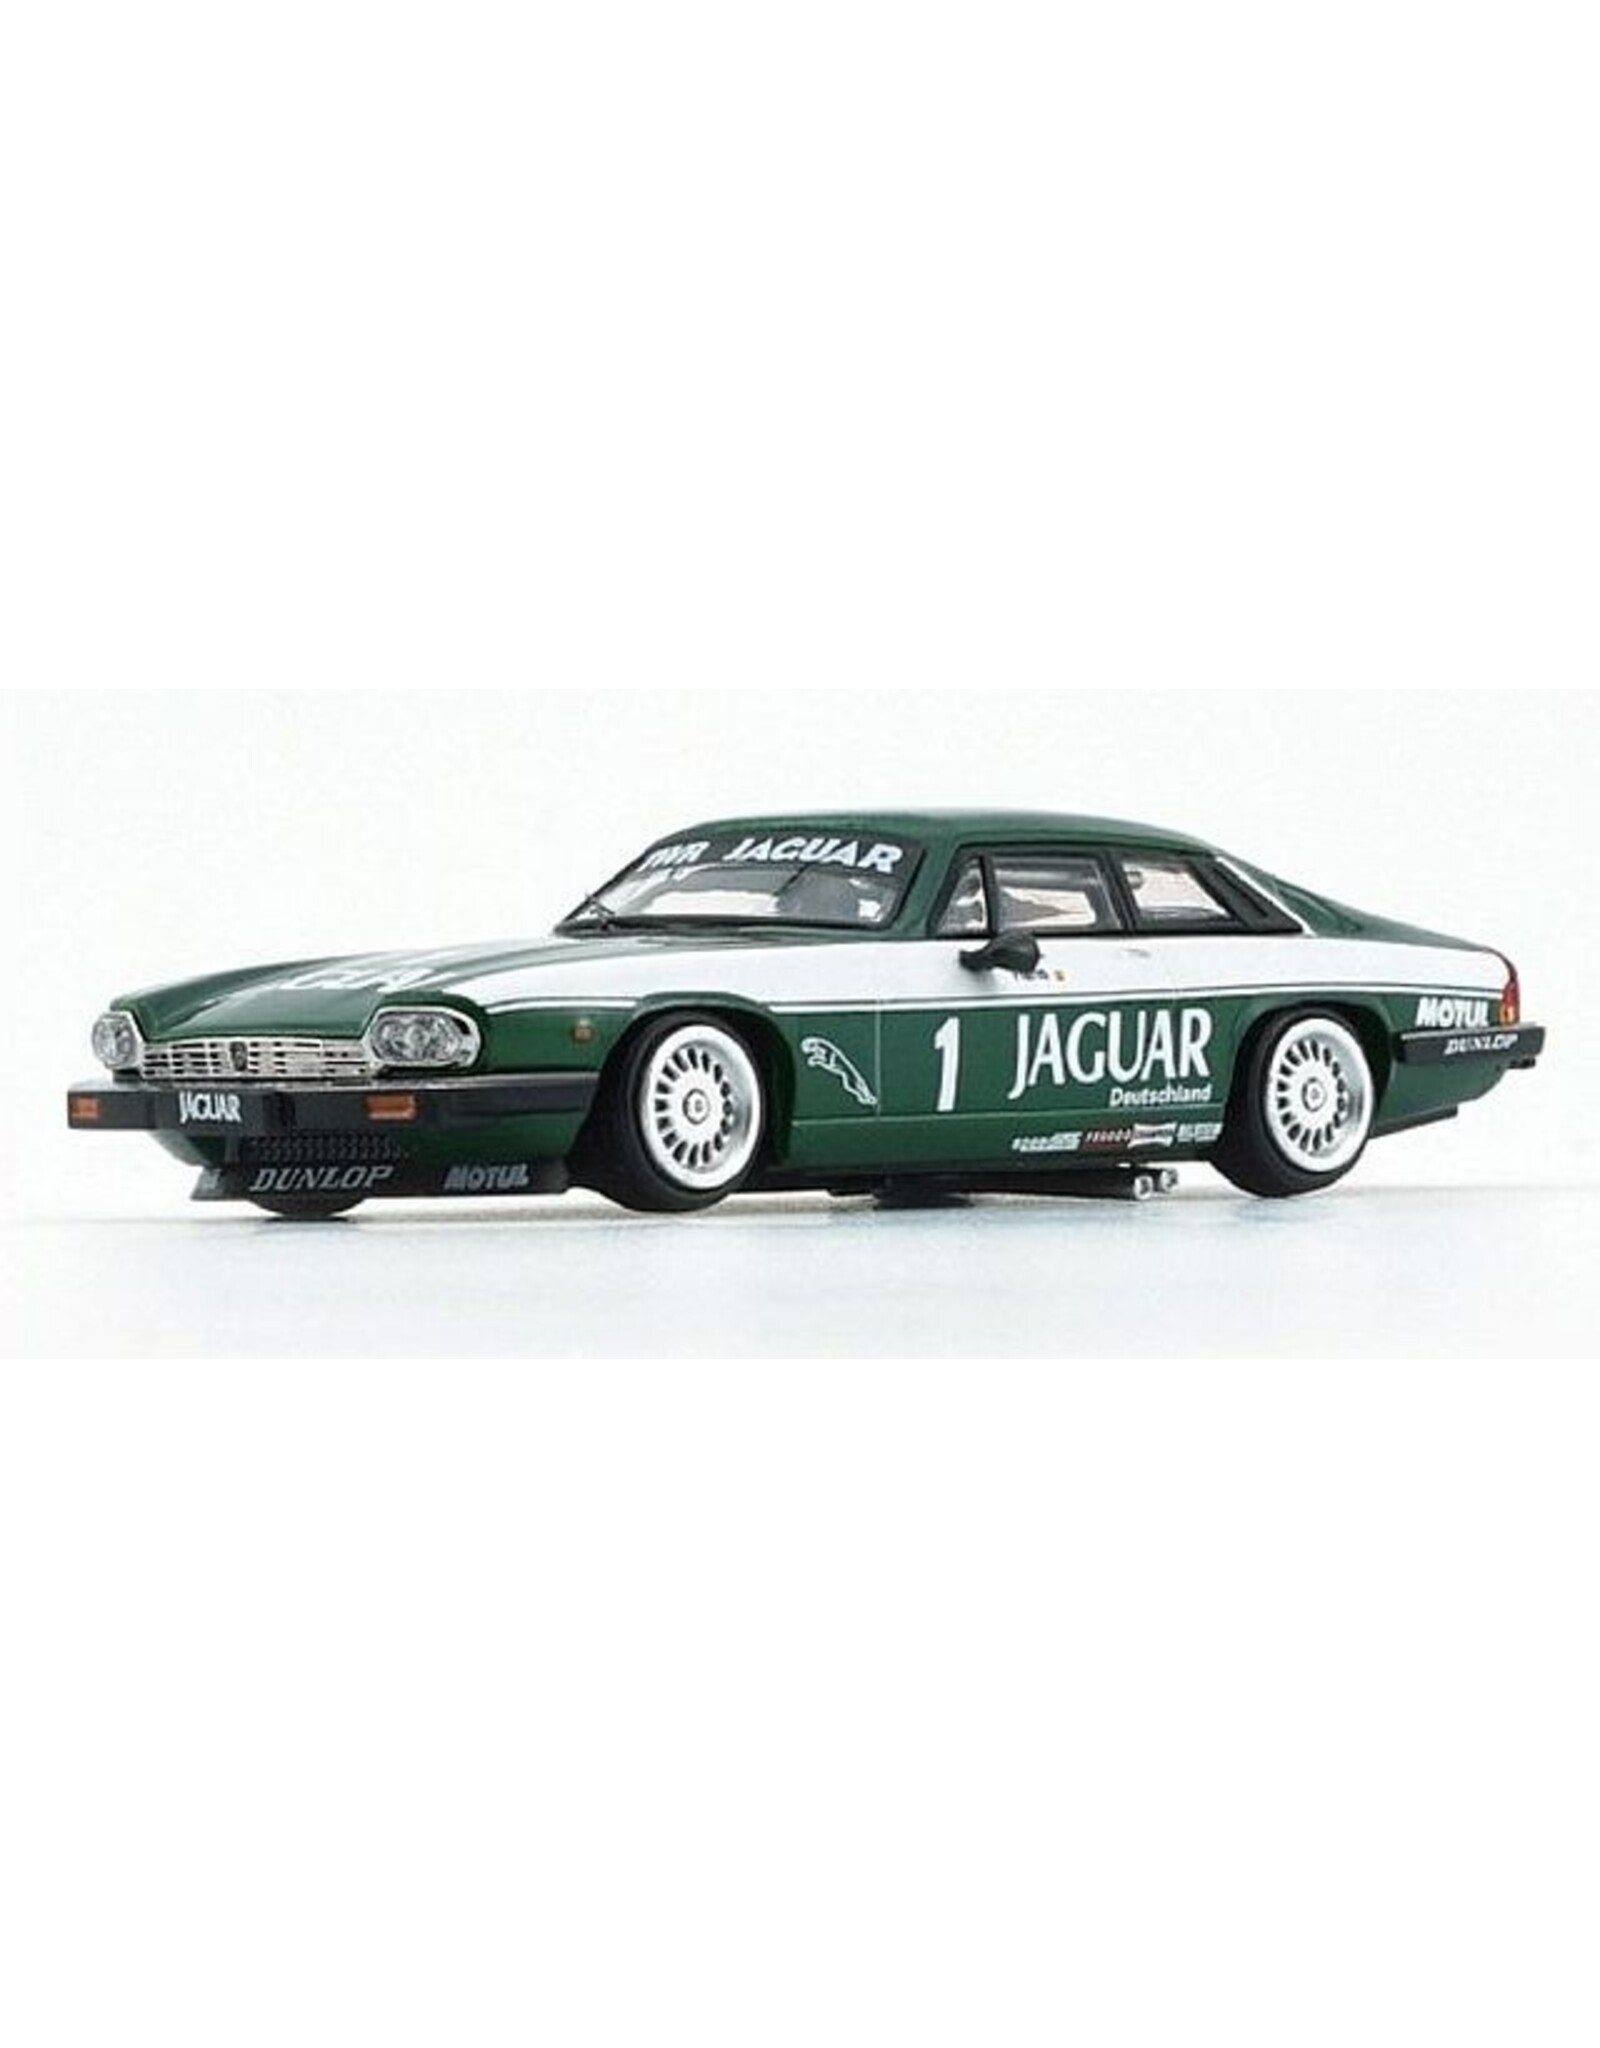 Jaguar Jaguar XJS JPS N.1 Racing(1984)green/white